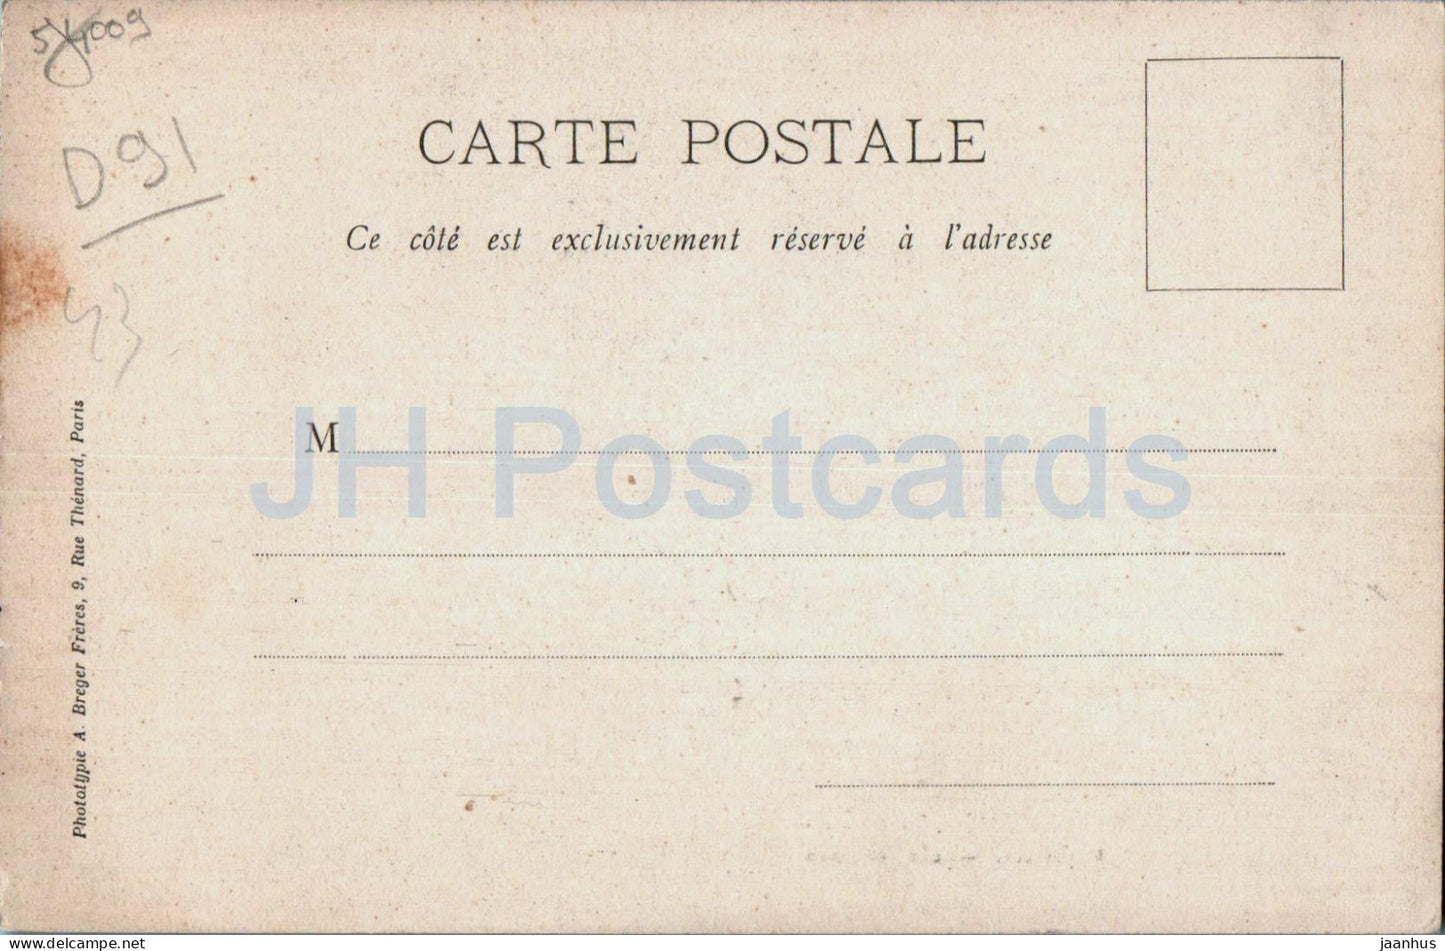 Mereville - Les Grottes - grotte - carte postale ancienne - France - inutilisée 